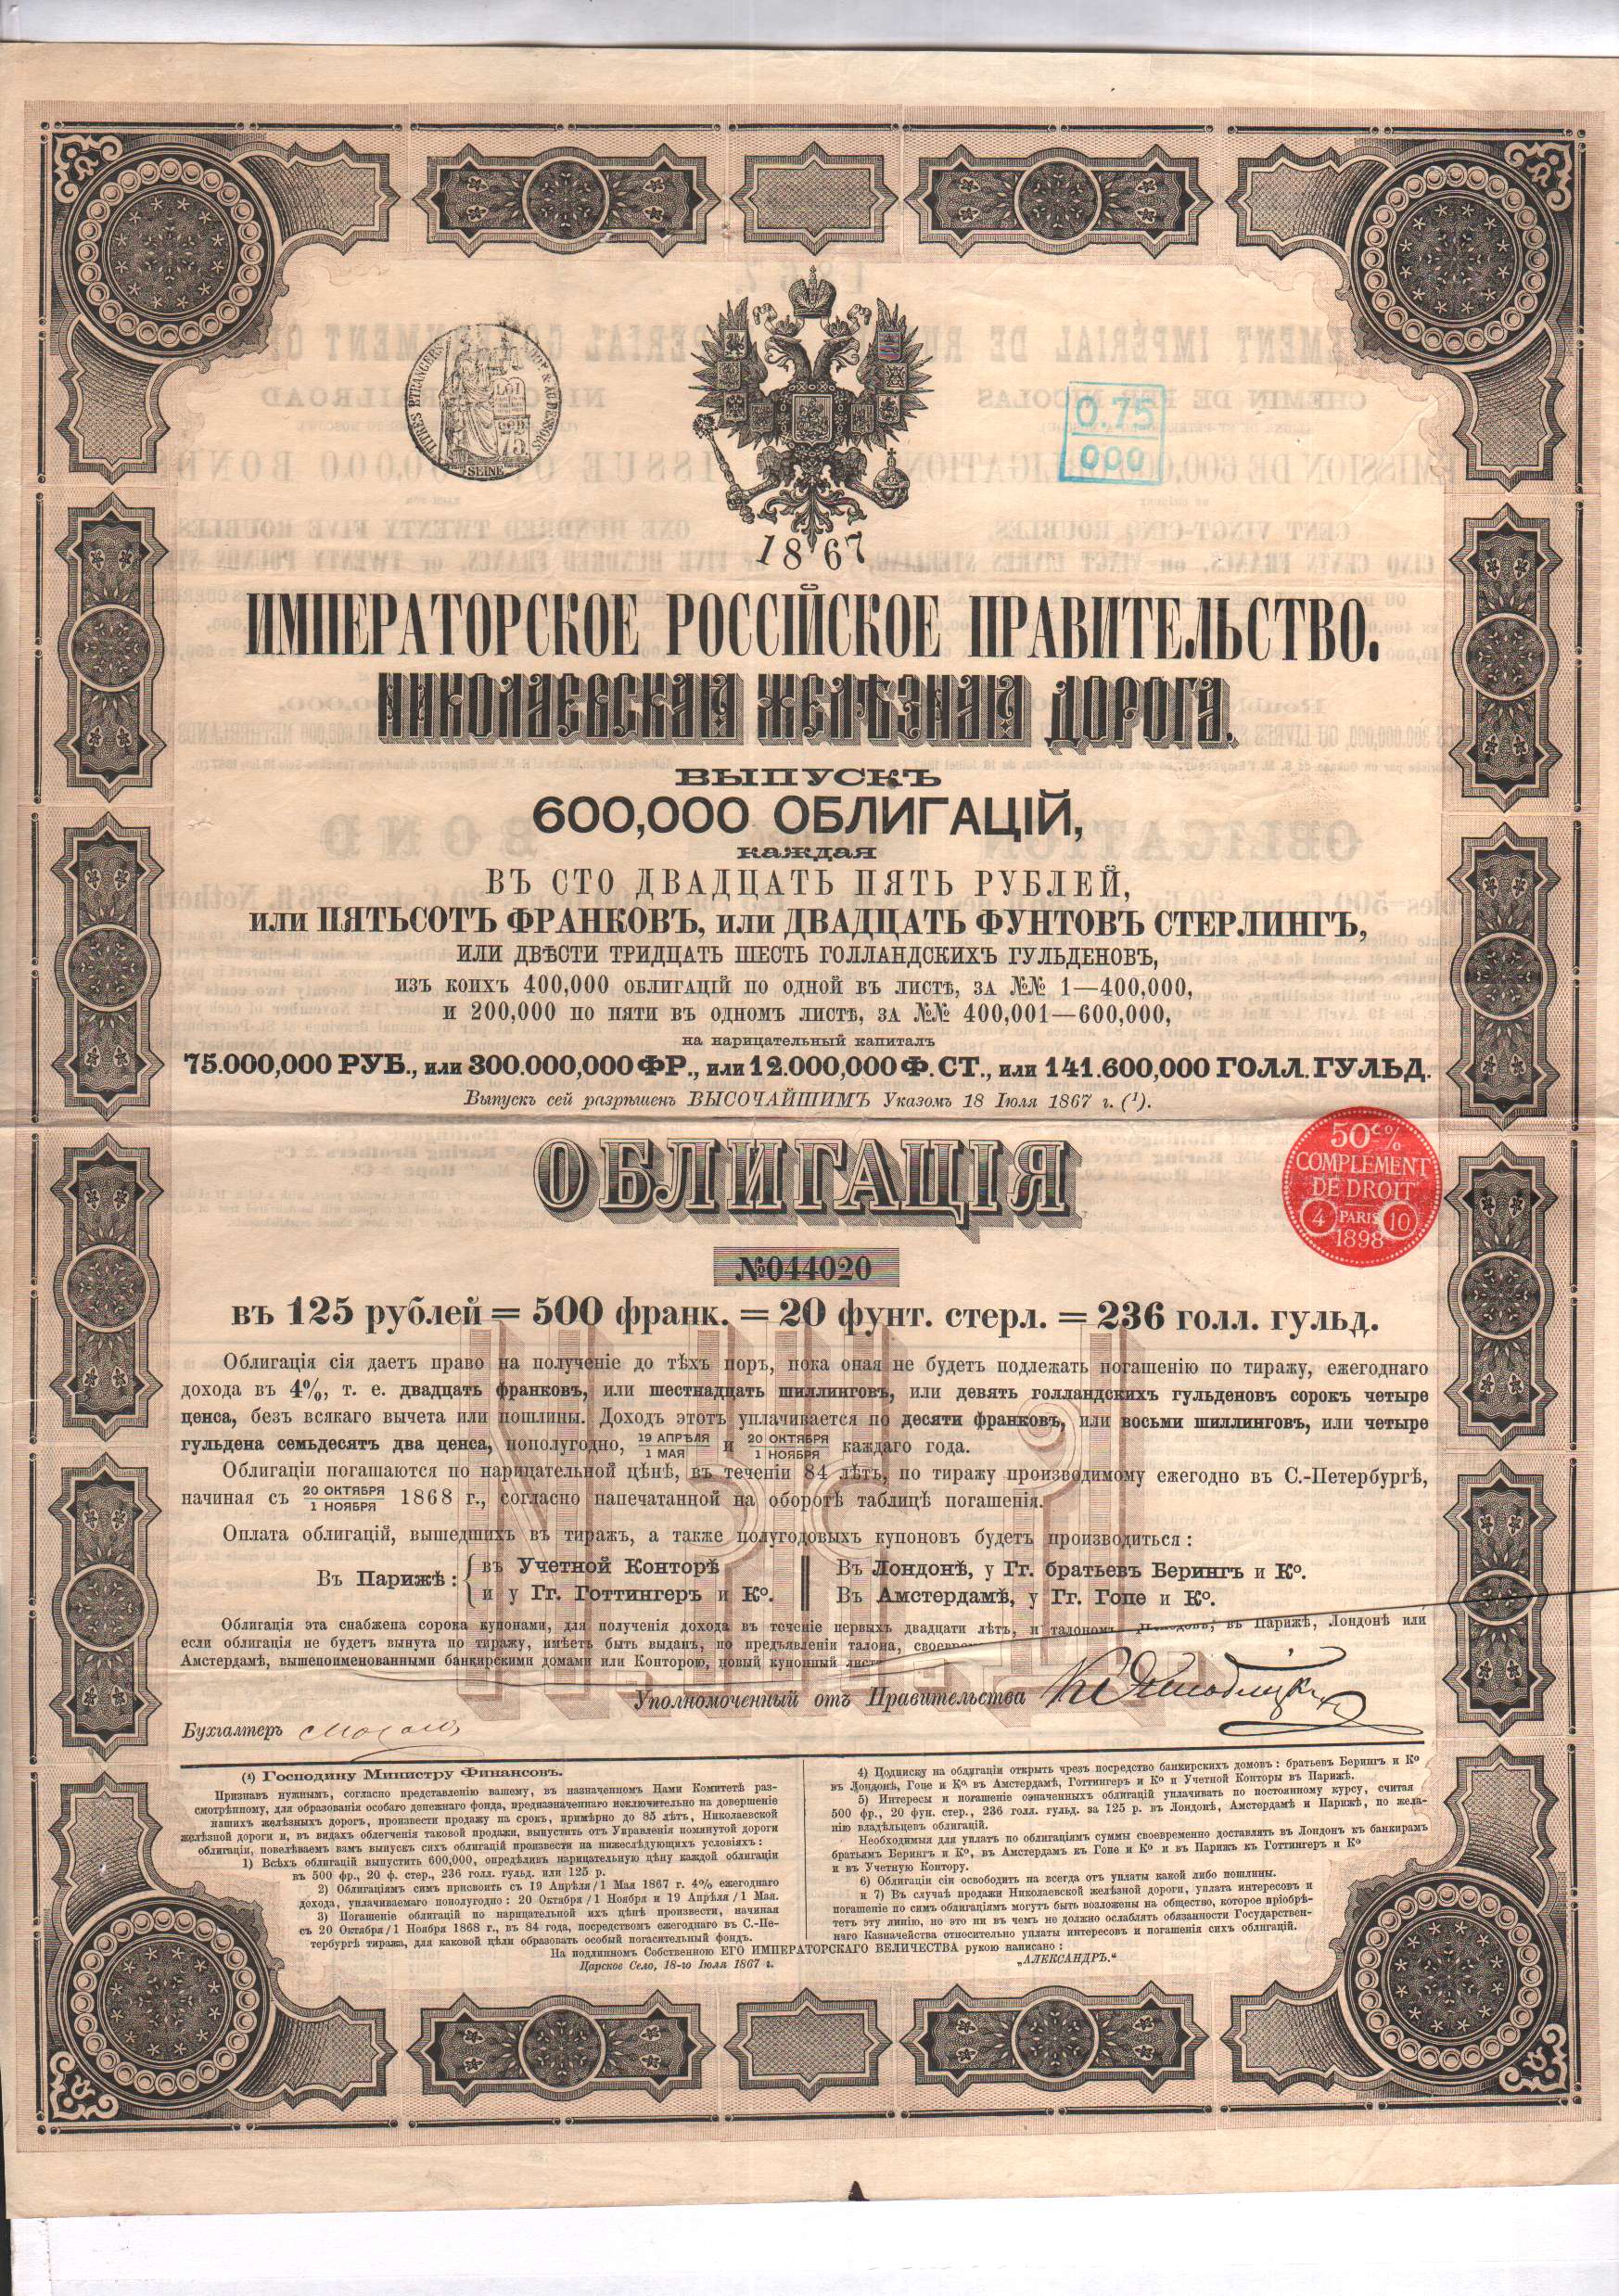 625 рублей час. Облигация российского Императорского правительства 1889.